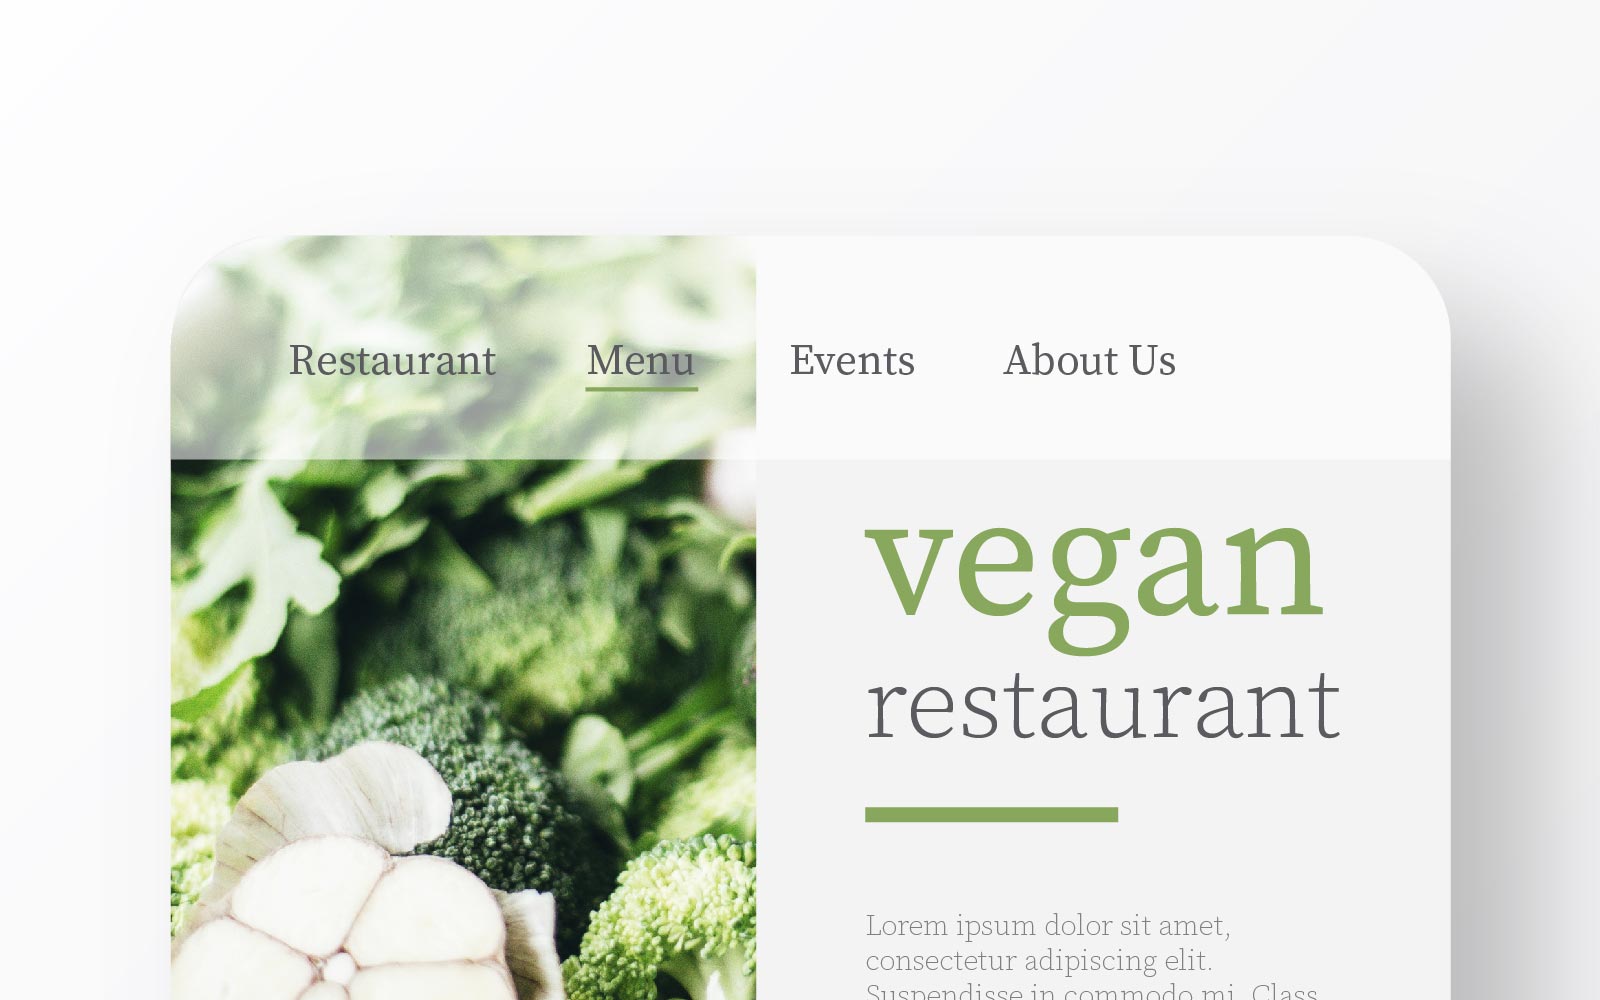 Vegan restaurant design on mobile